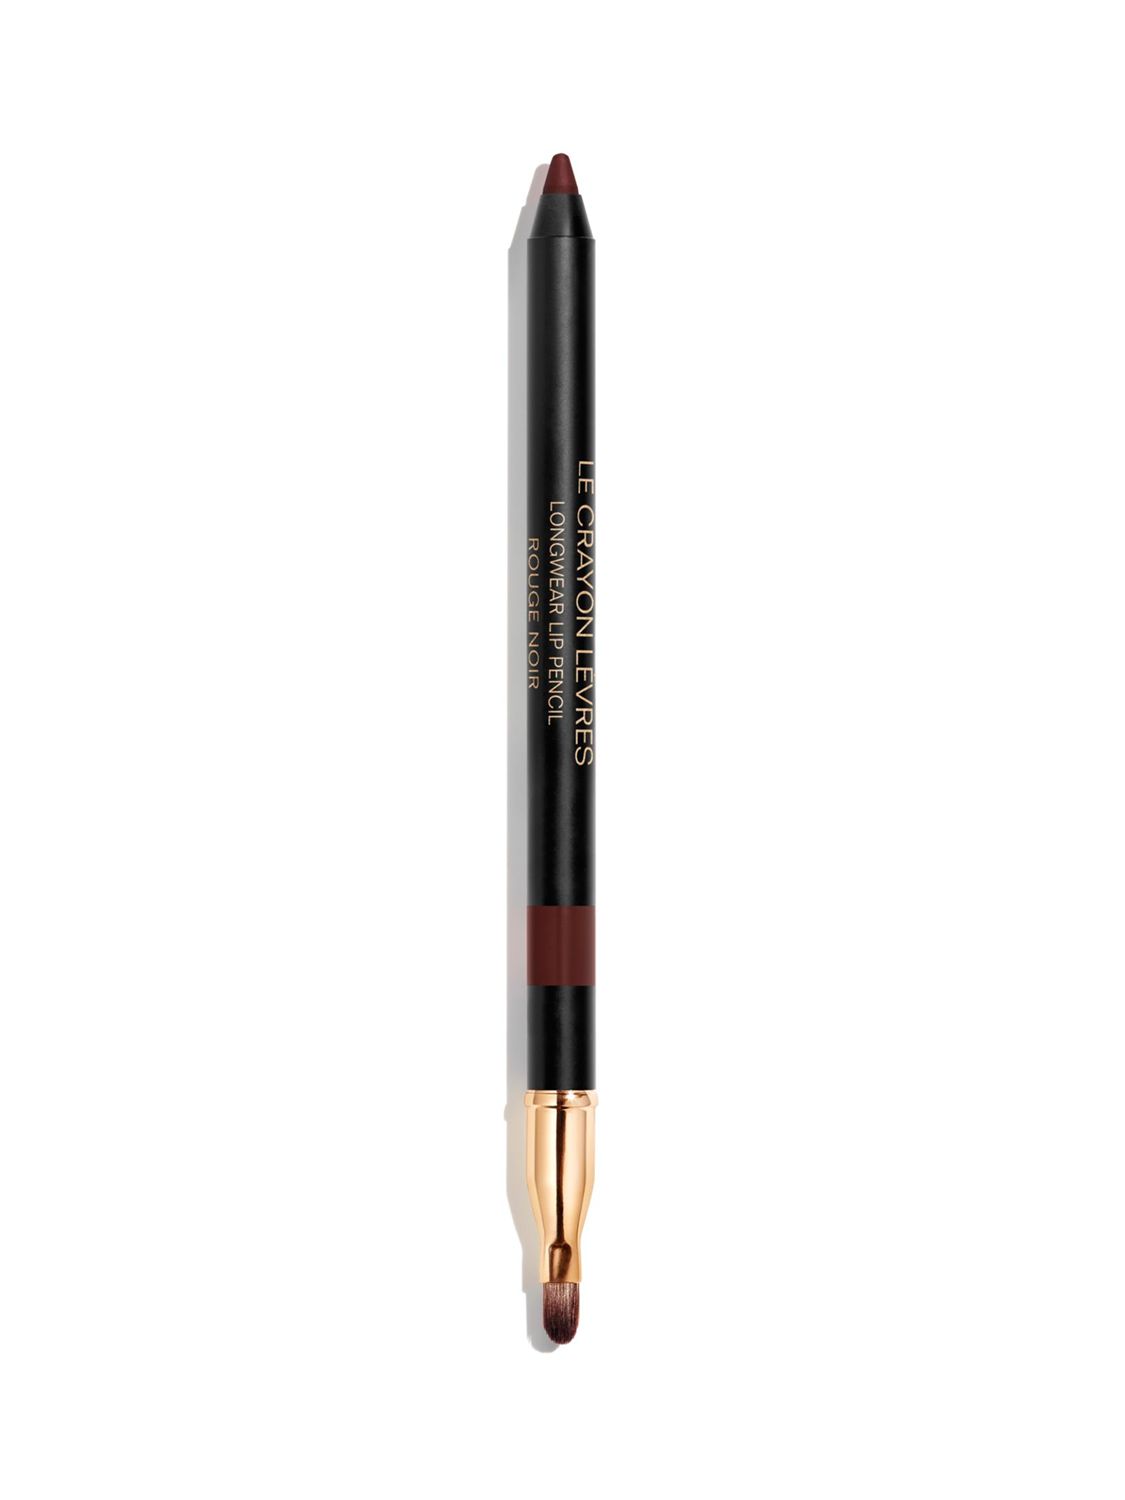 CHANEL Le Crayon Lèvres Longwear Lip Pencil, 194 Rouge Noir At John Lewis  Partners